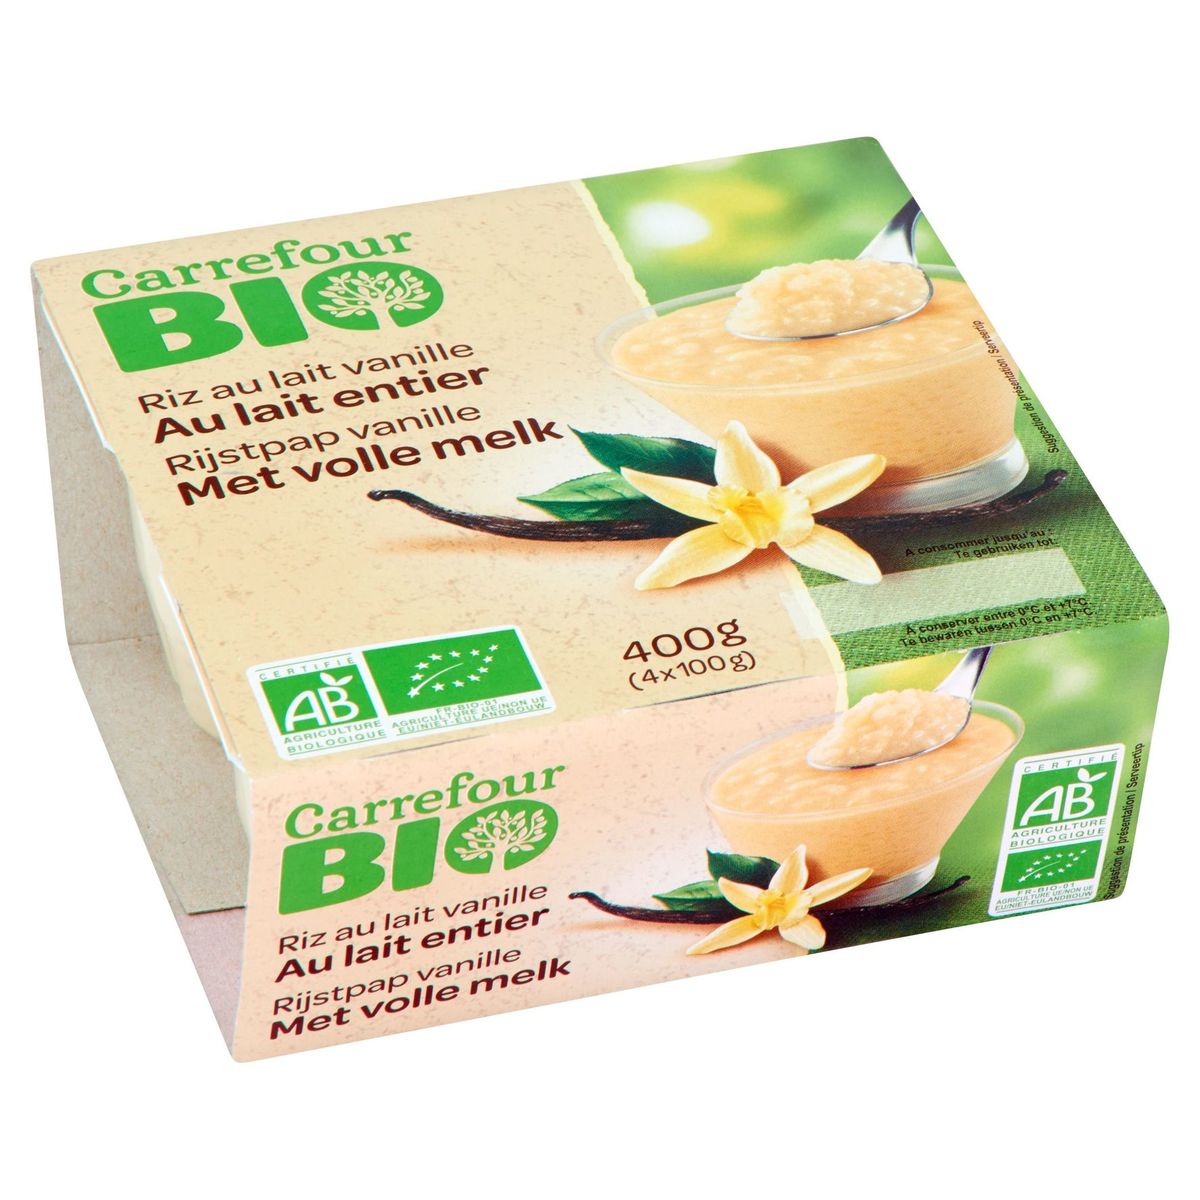 Carrefour Bio Rijstpap Vanille met Volle Melk 4 x 100 g